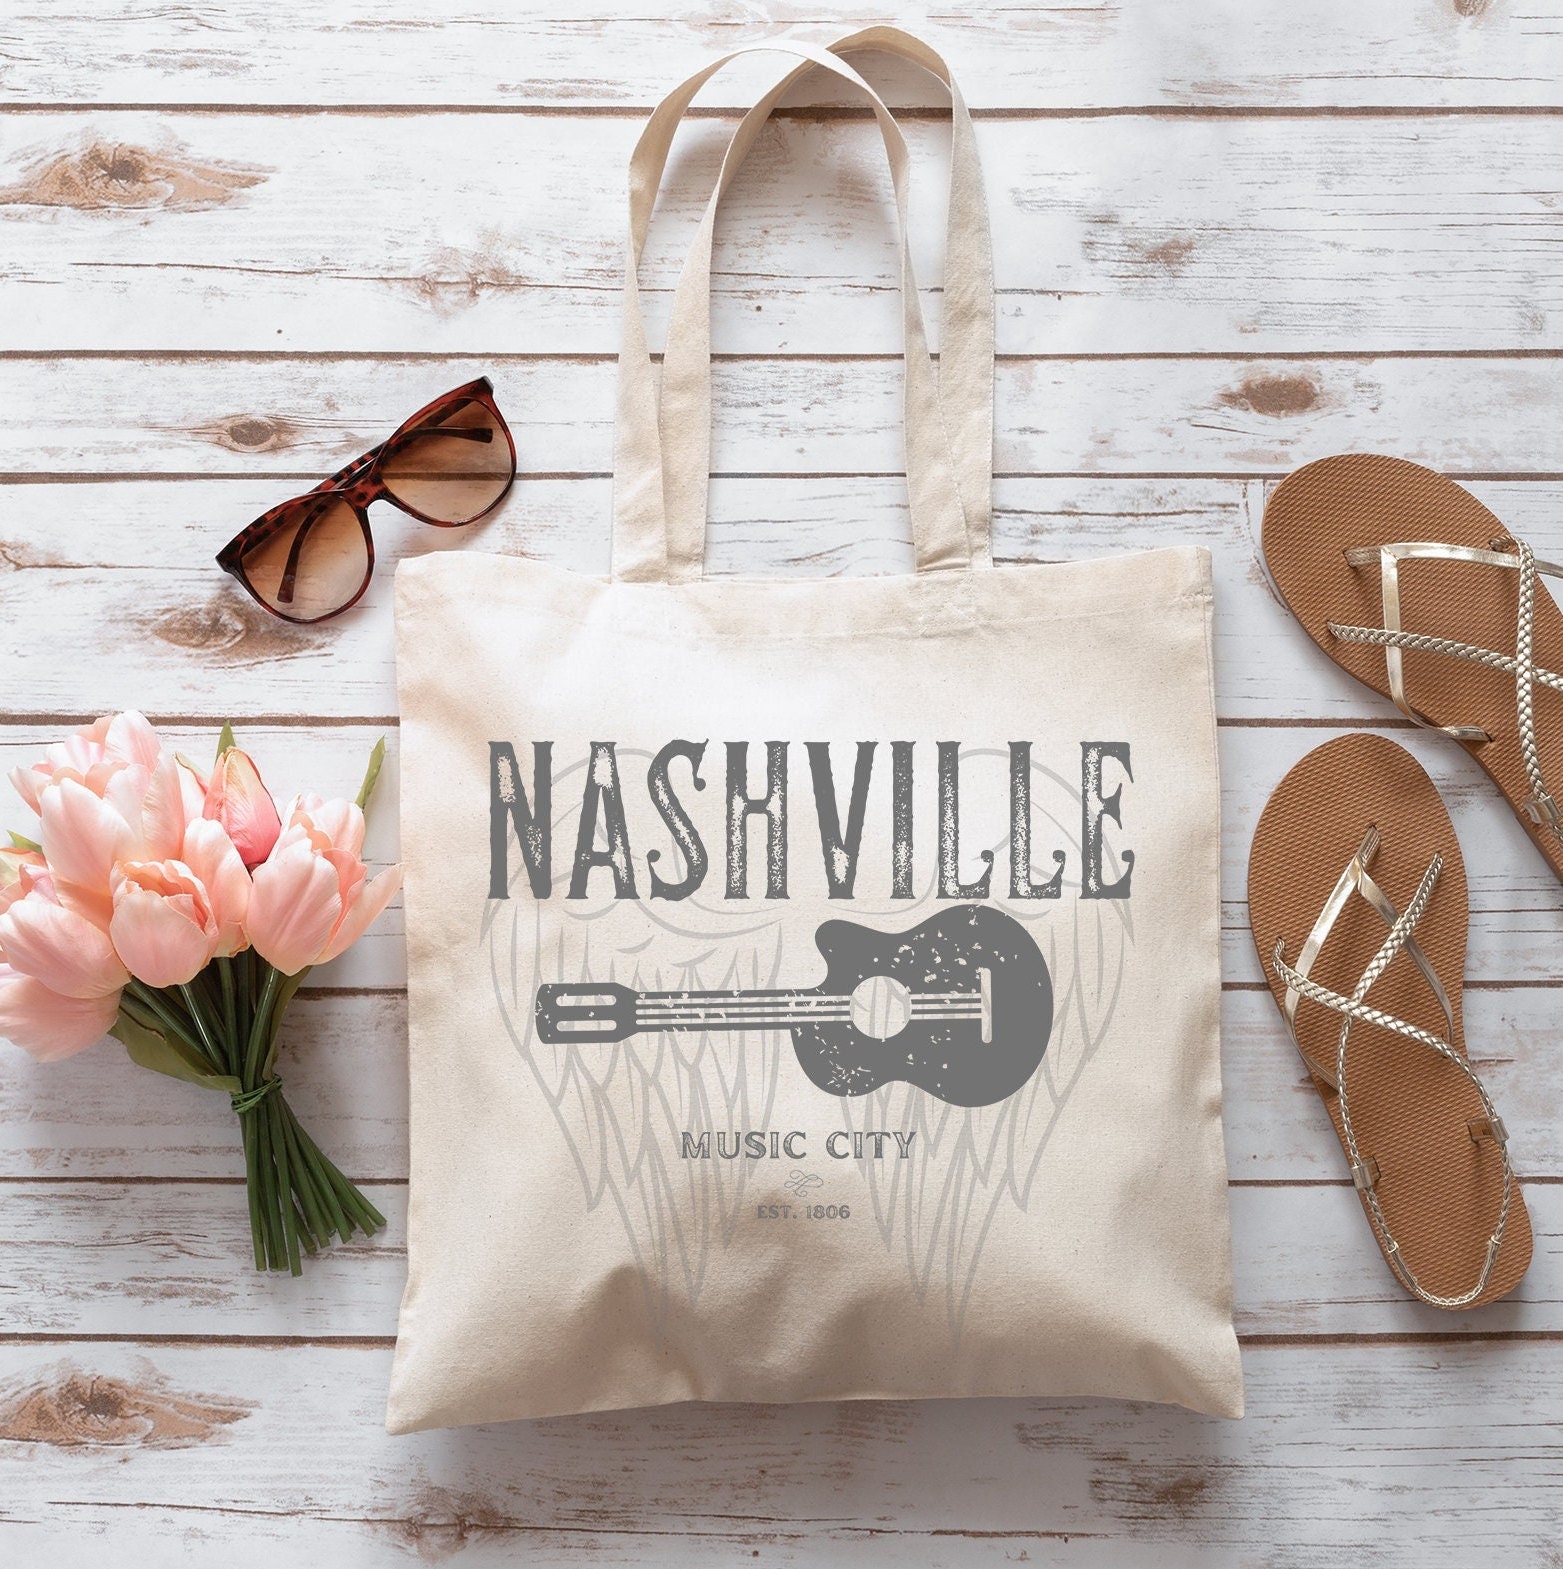 Nashville Tn Tote Bags for Sale - Fine Art America